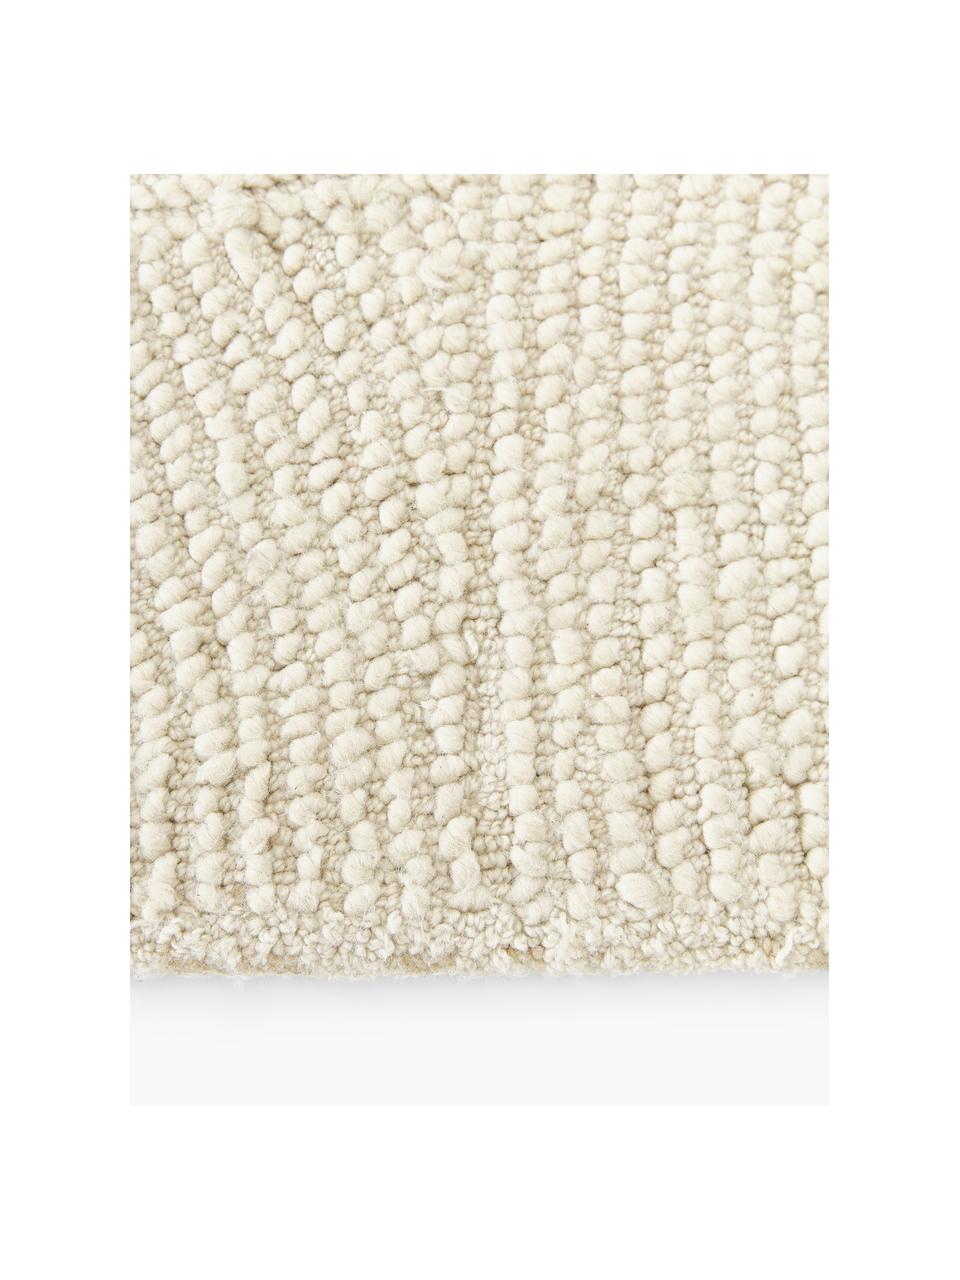 Handgetufteter Kurzflor-Teppich Eleni aus recycelten Materialien, Flor: 100 % Polyester, Beige, B 120 x L 180 cm (Größe S)